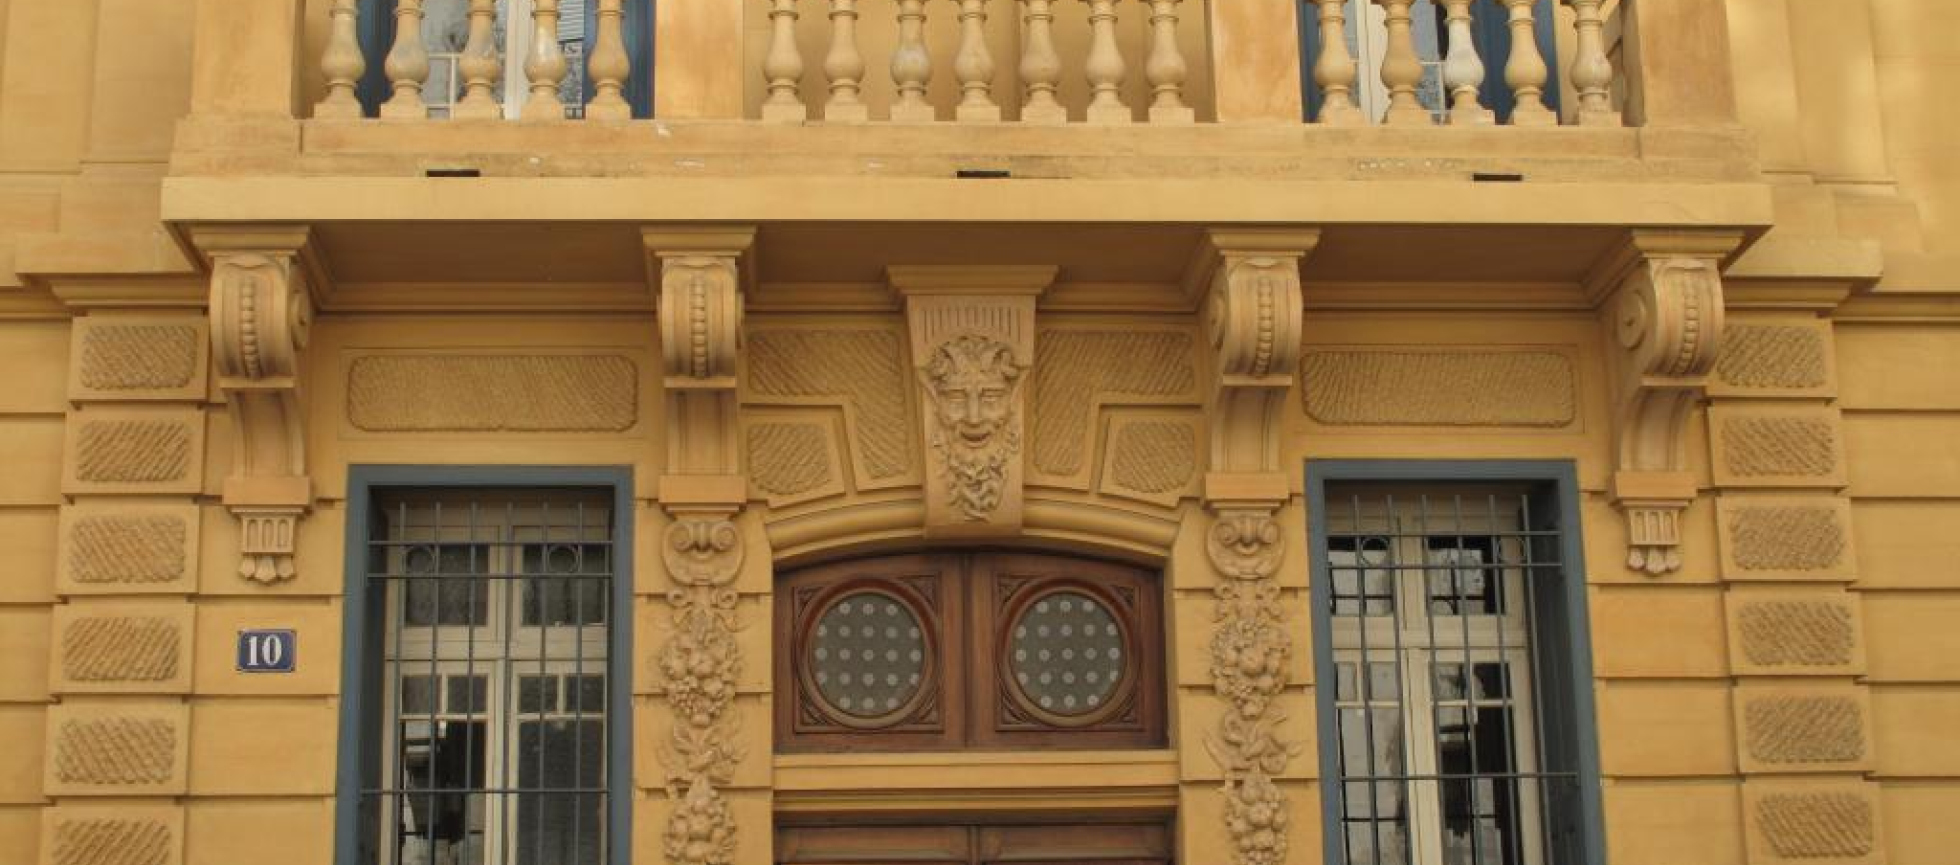 Façade peinte en ocre jaune ,balcon à balustres au 1er,guirlandes et tête de faune ornant les piedroits et linteau de l'entrée